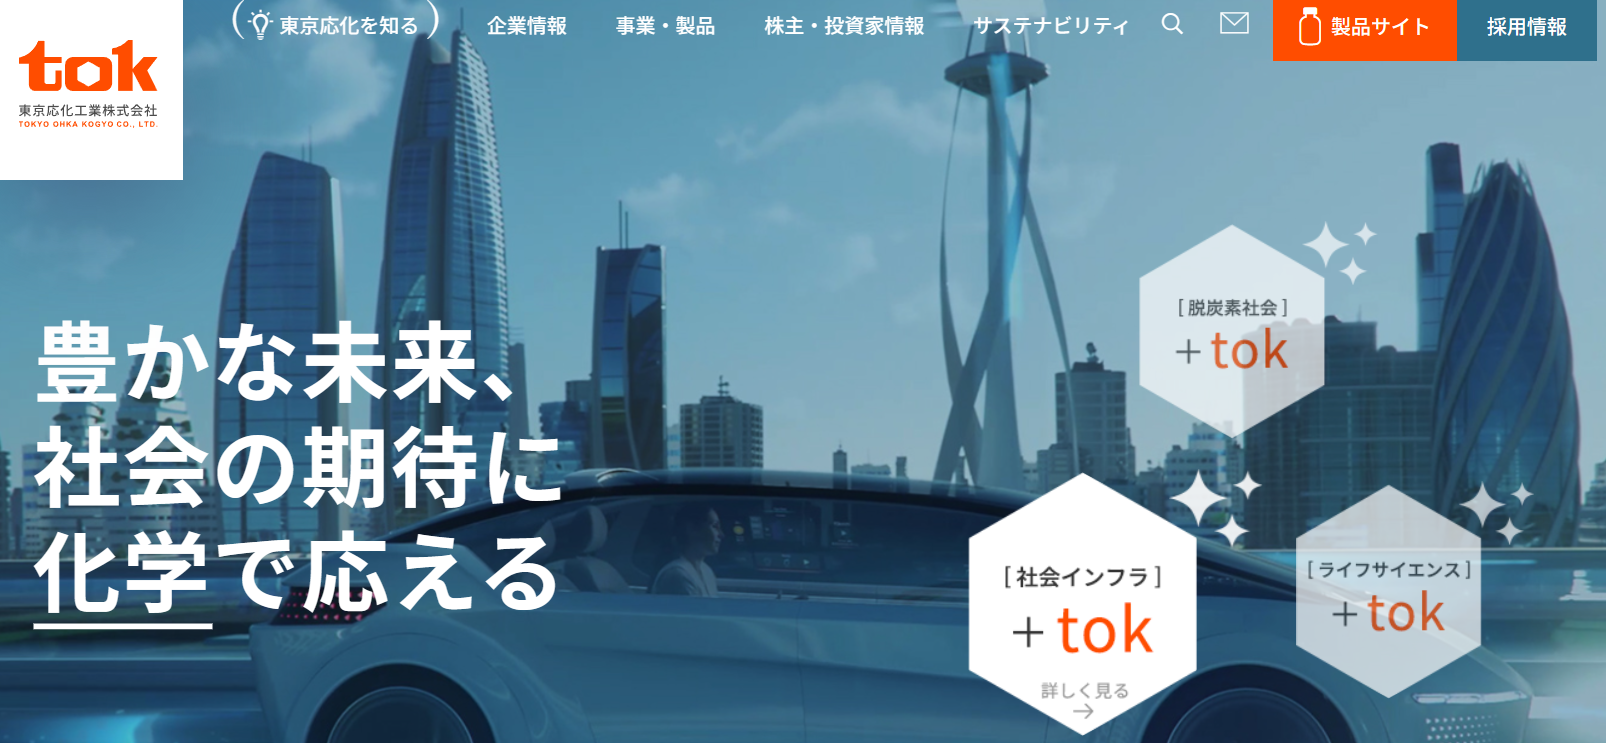 東京応化工業株式会社 ホームページ バナー